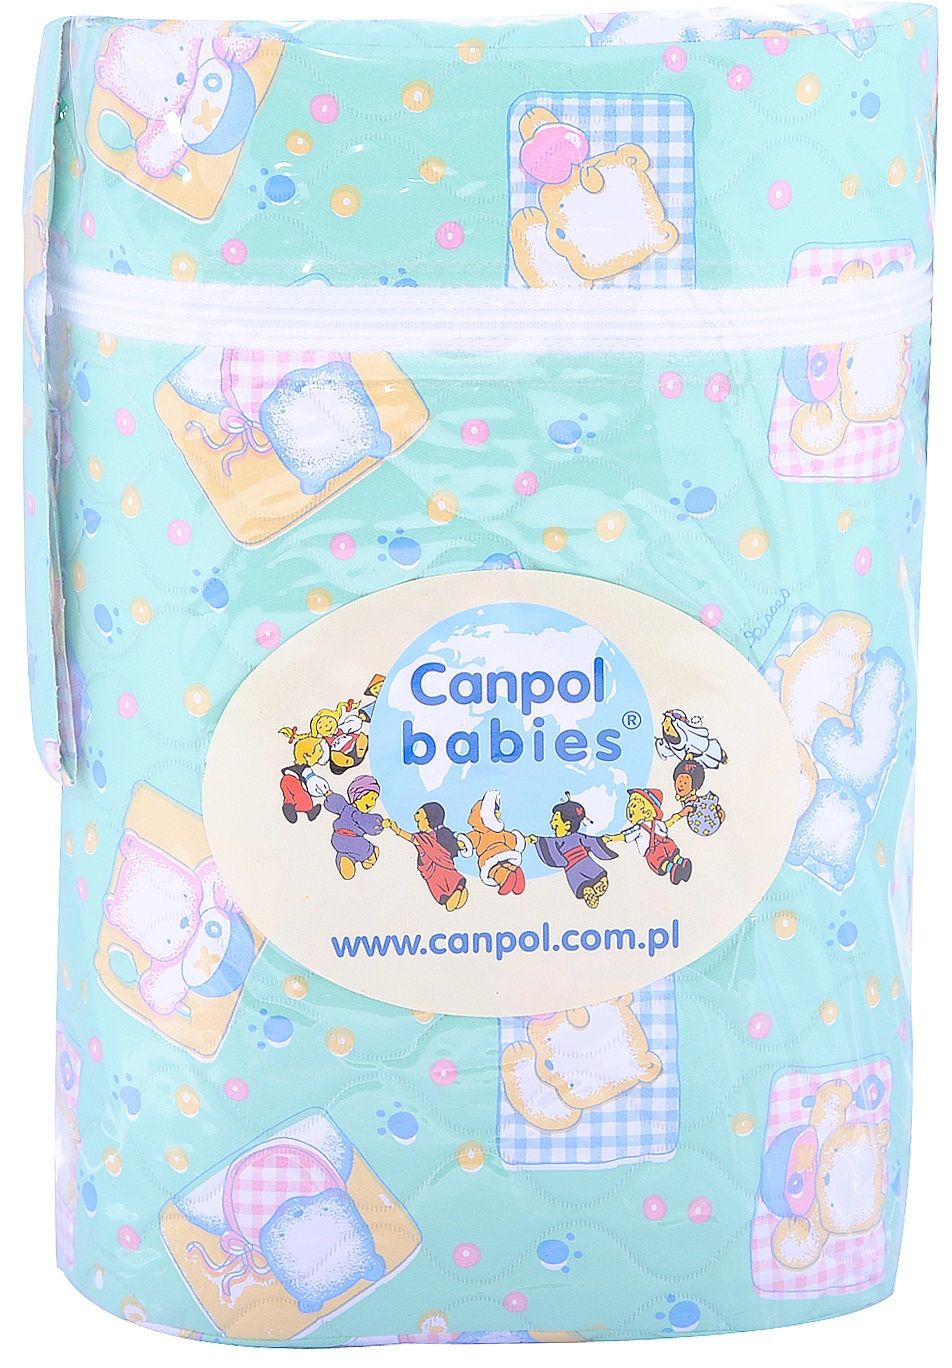 Canpol Babies Термоупаковка для двух бутылочек